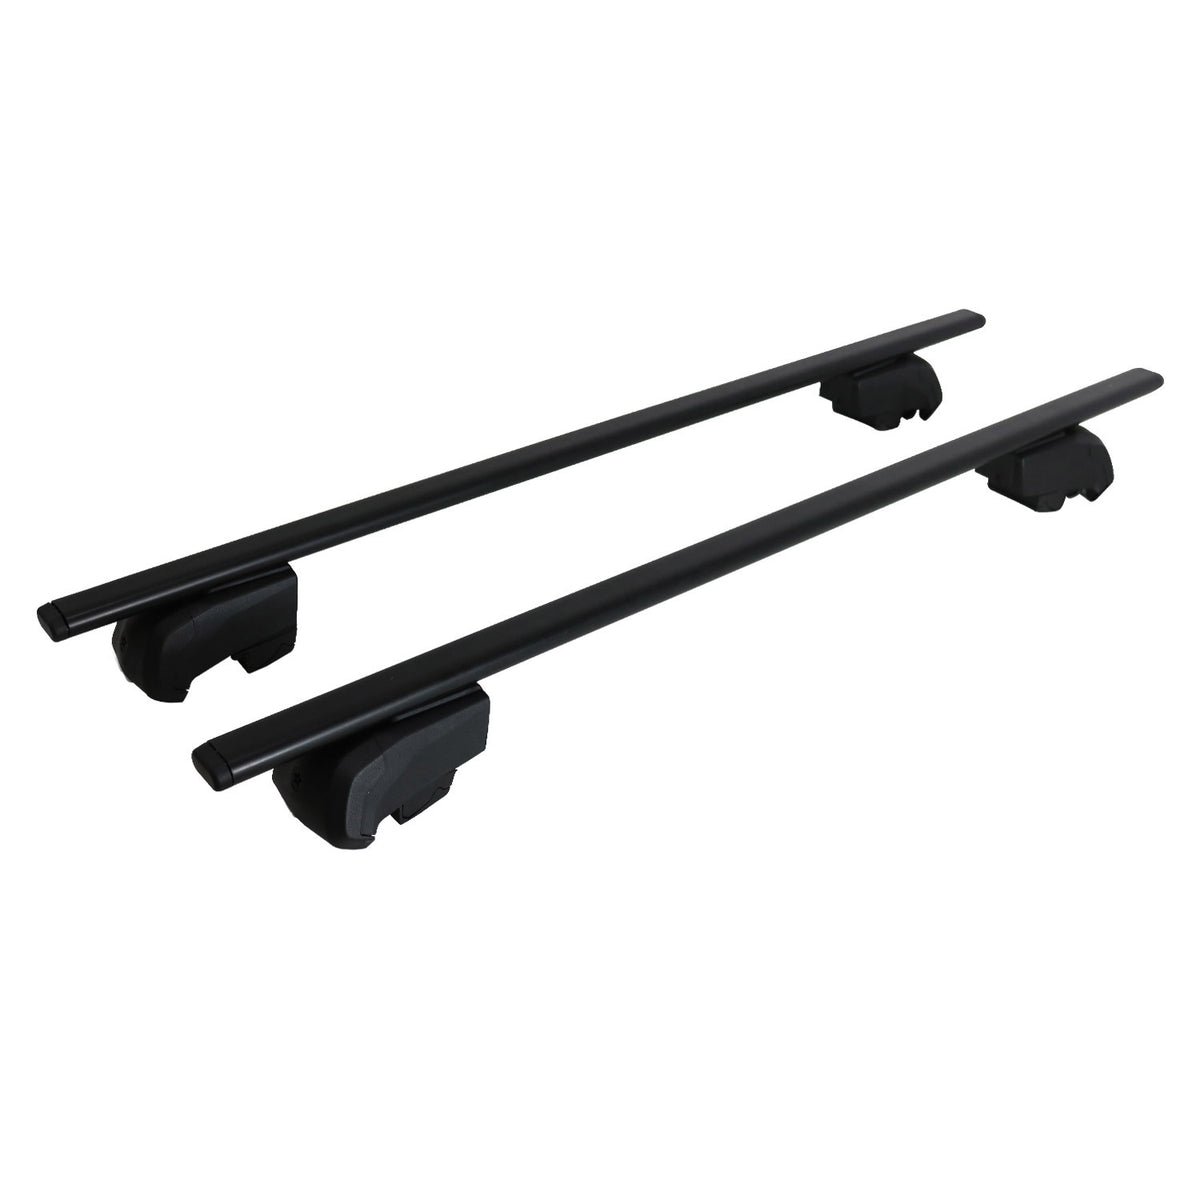 Roof rack luggage rack for Ford Focus 2011-2018 basic rack TÜV ABE black 2x